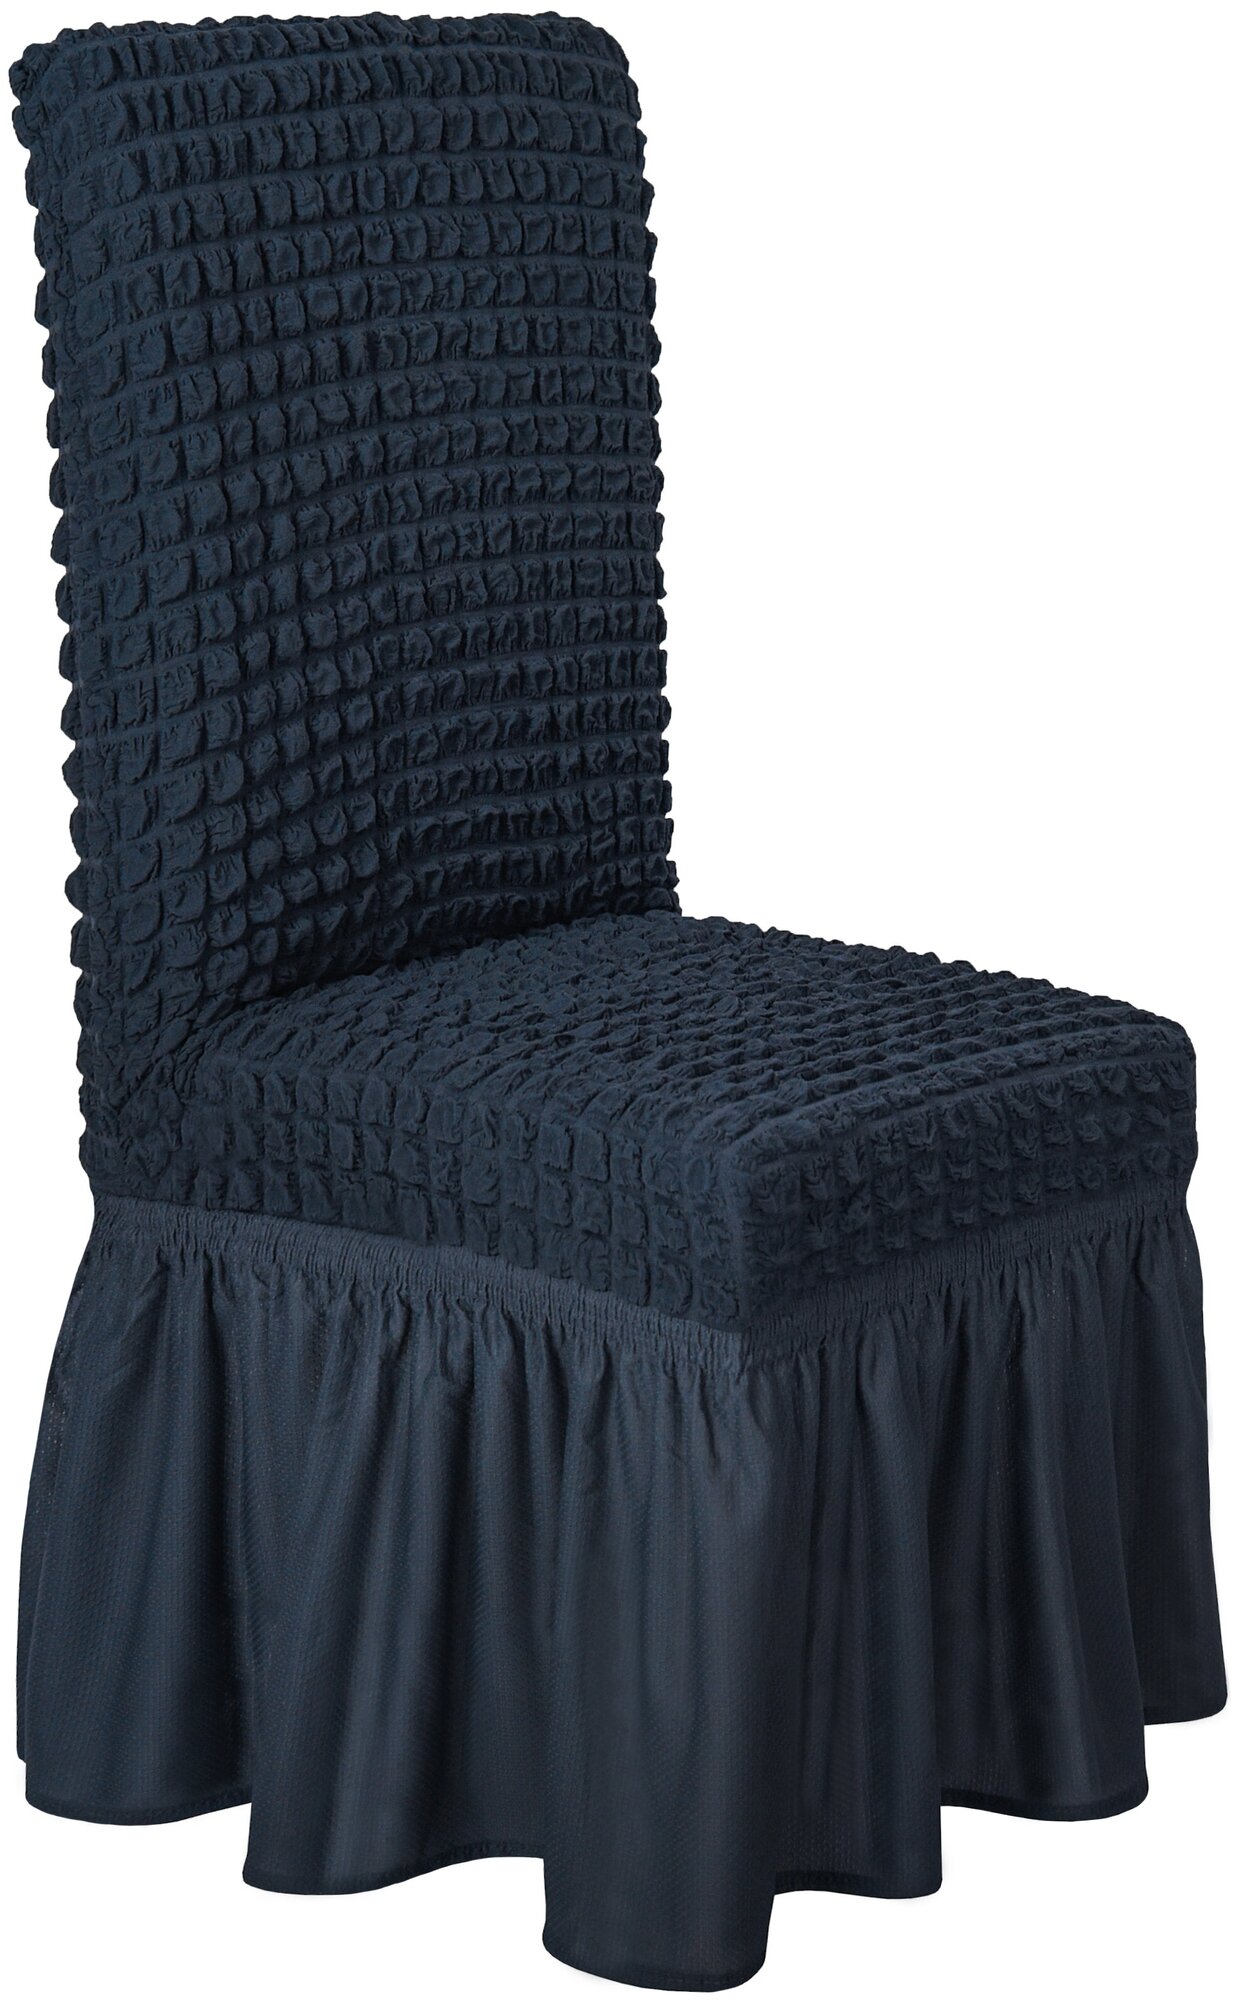 Чехол Venera на стул со спинкой и оборкой универсальный однотонный, цвет Антрацит